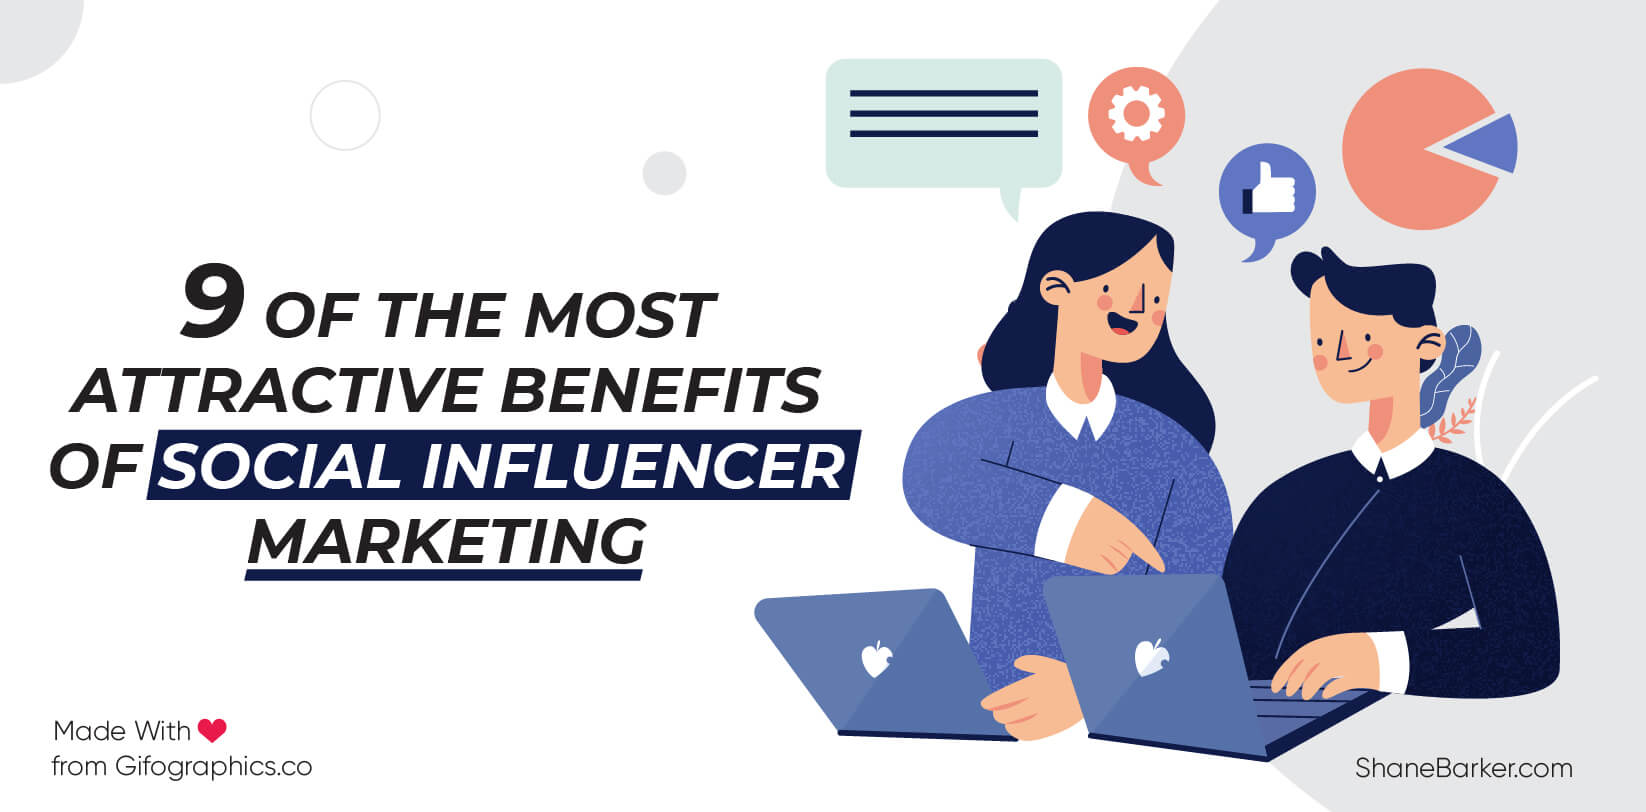 9 dintre cele mai atractive beneficii ale marketingului pentru influențatori sociali (actualizat în octombrie 2019)